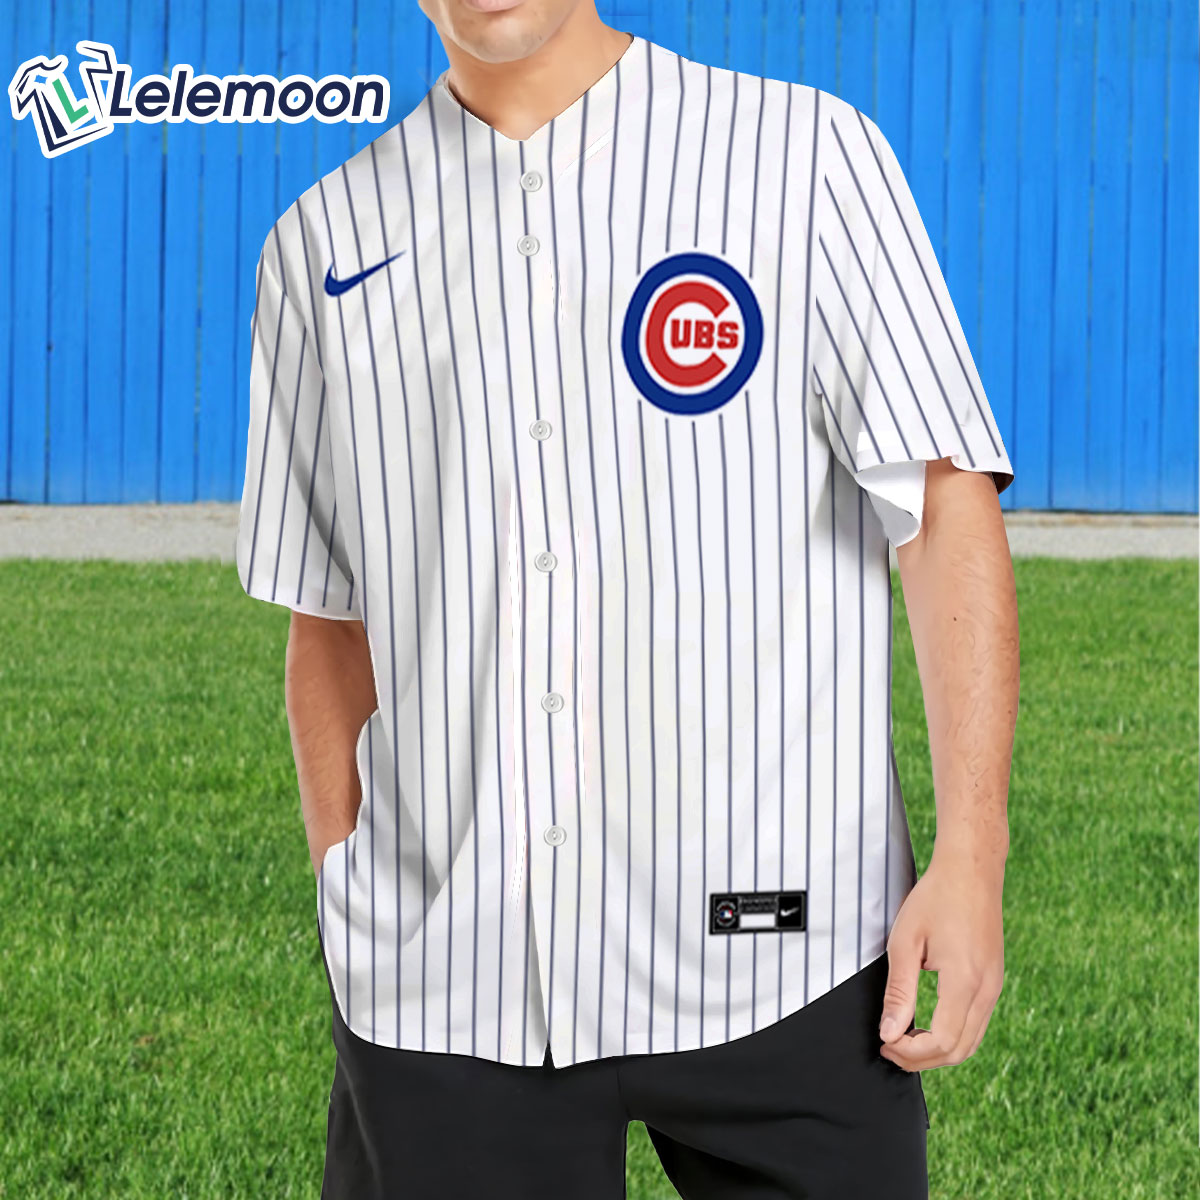 chicago cubs jersey shirt